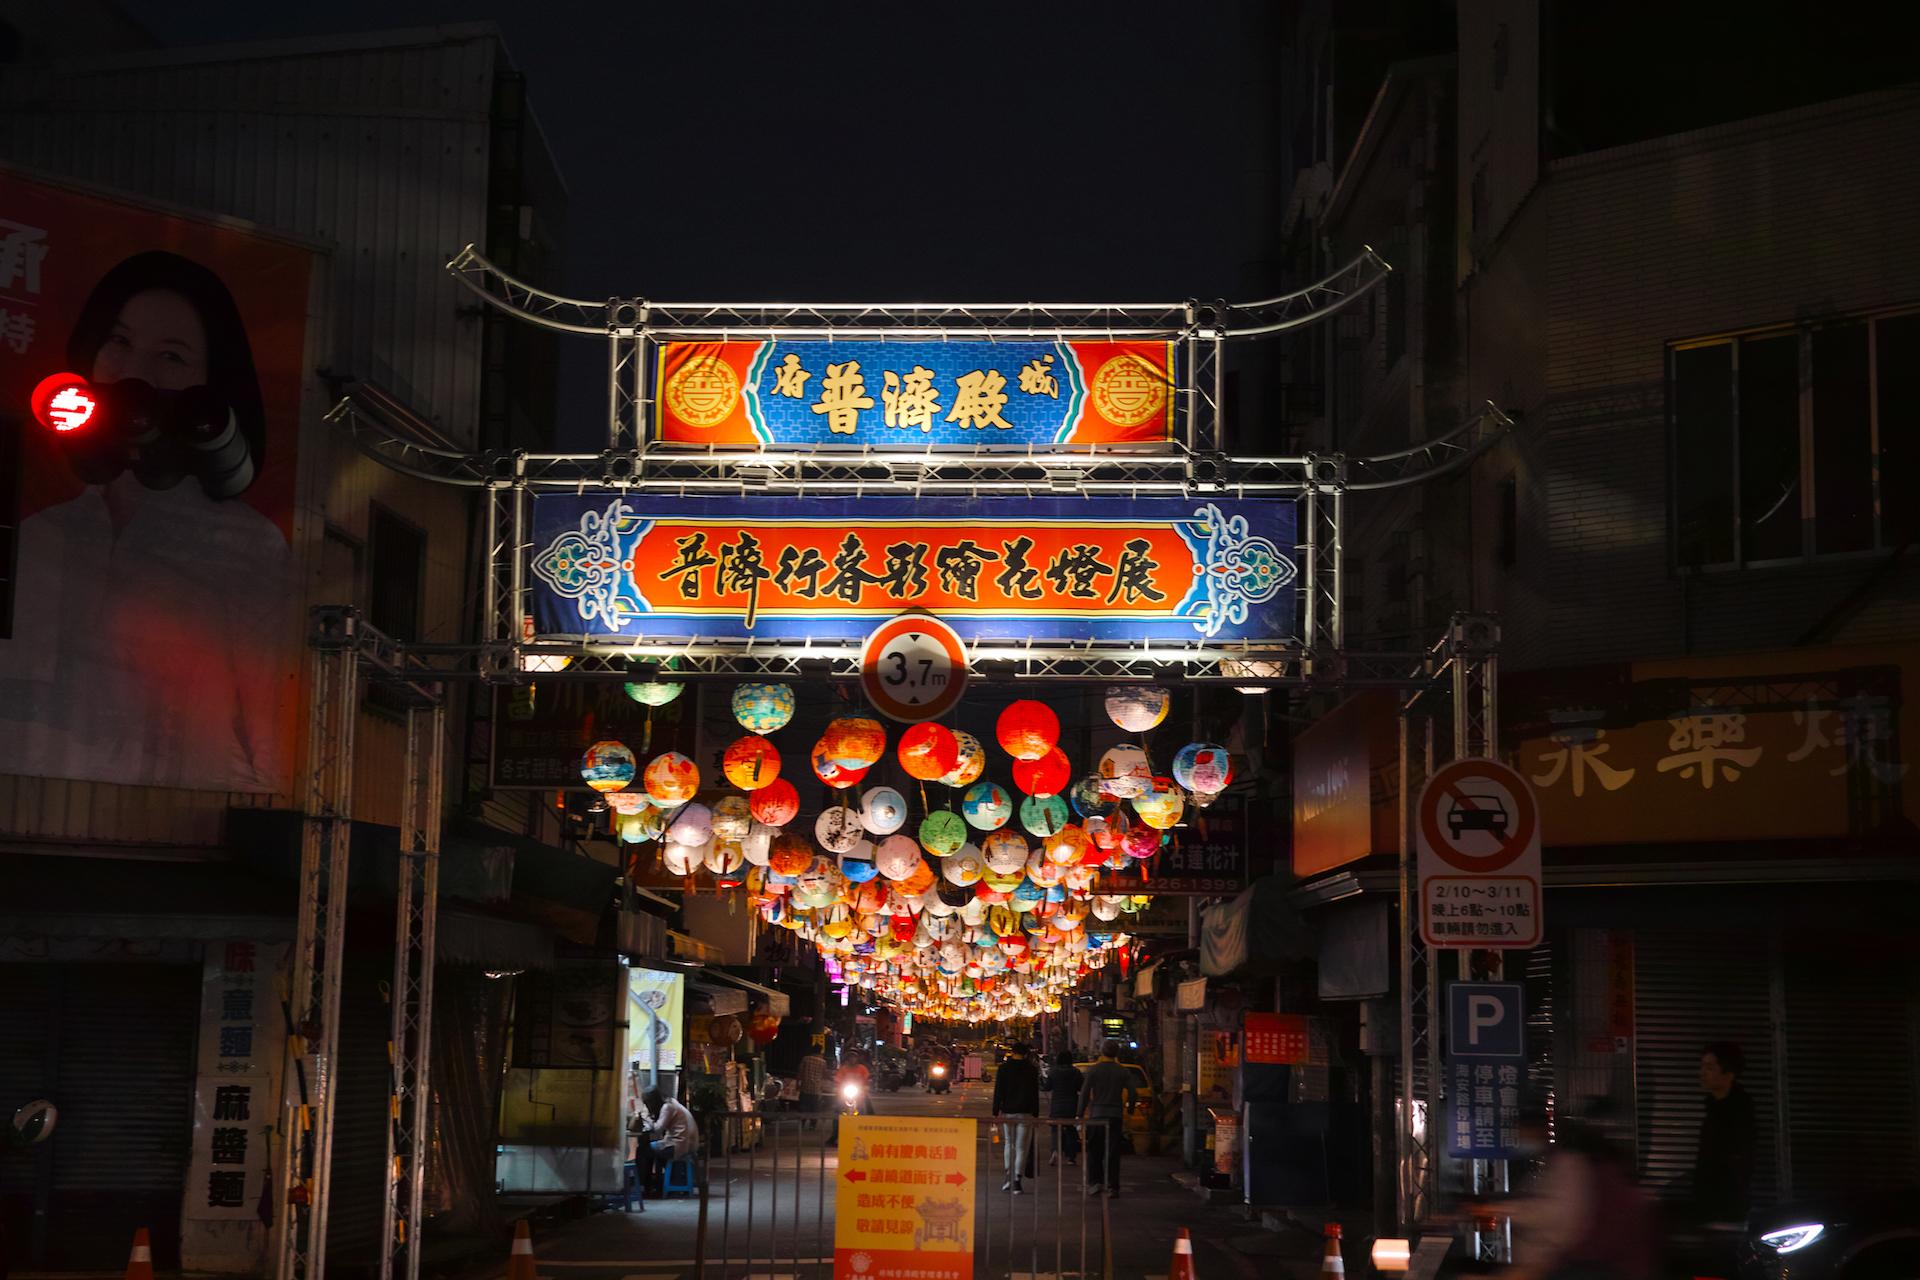 typetour 文字设计与视觉文化旅行——台南,台北(2018613–619)